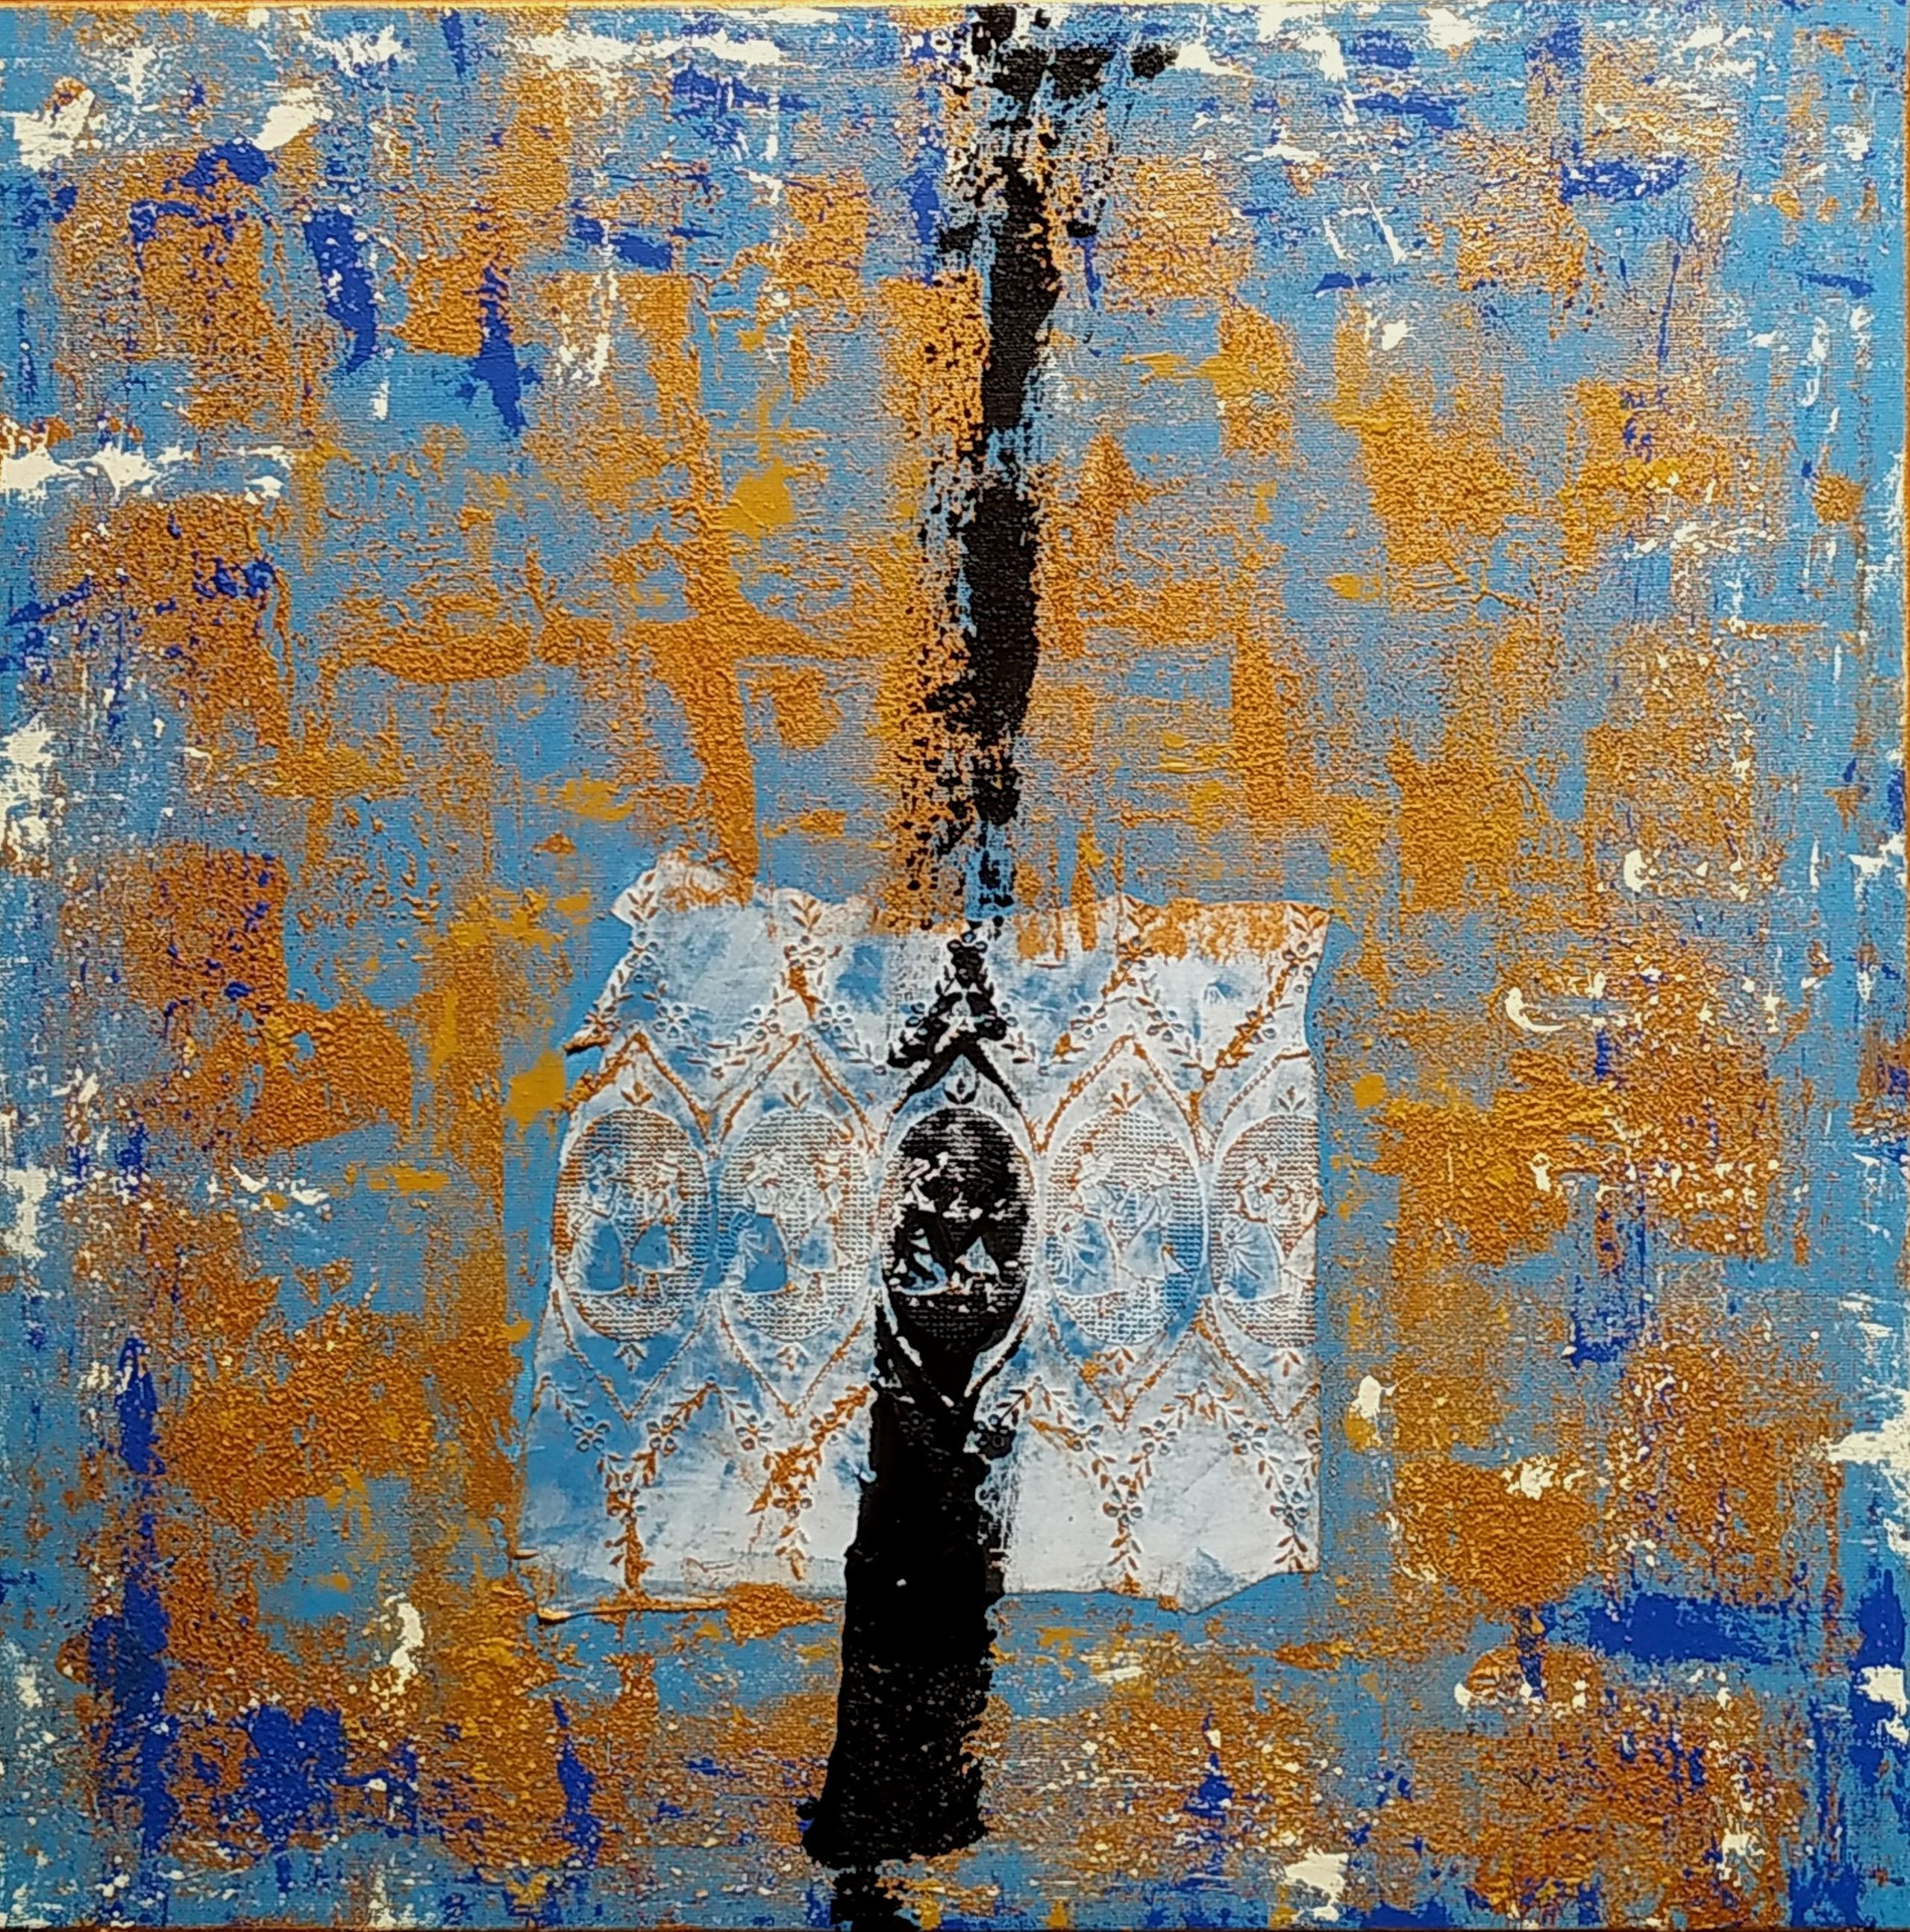 Mixed technique, 60 x 60 cm, 2021